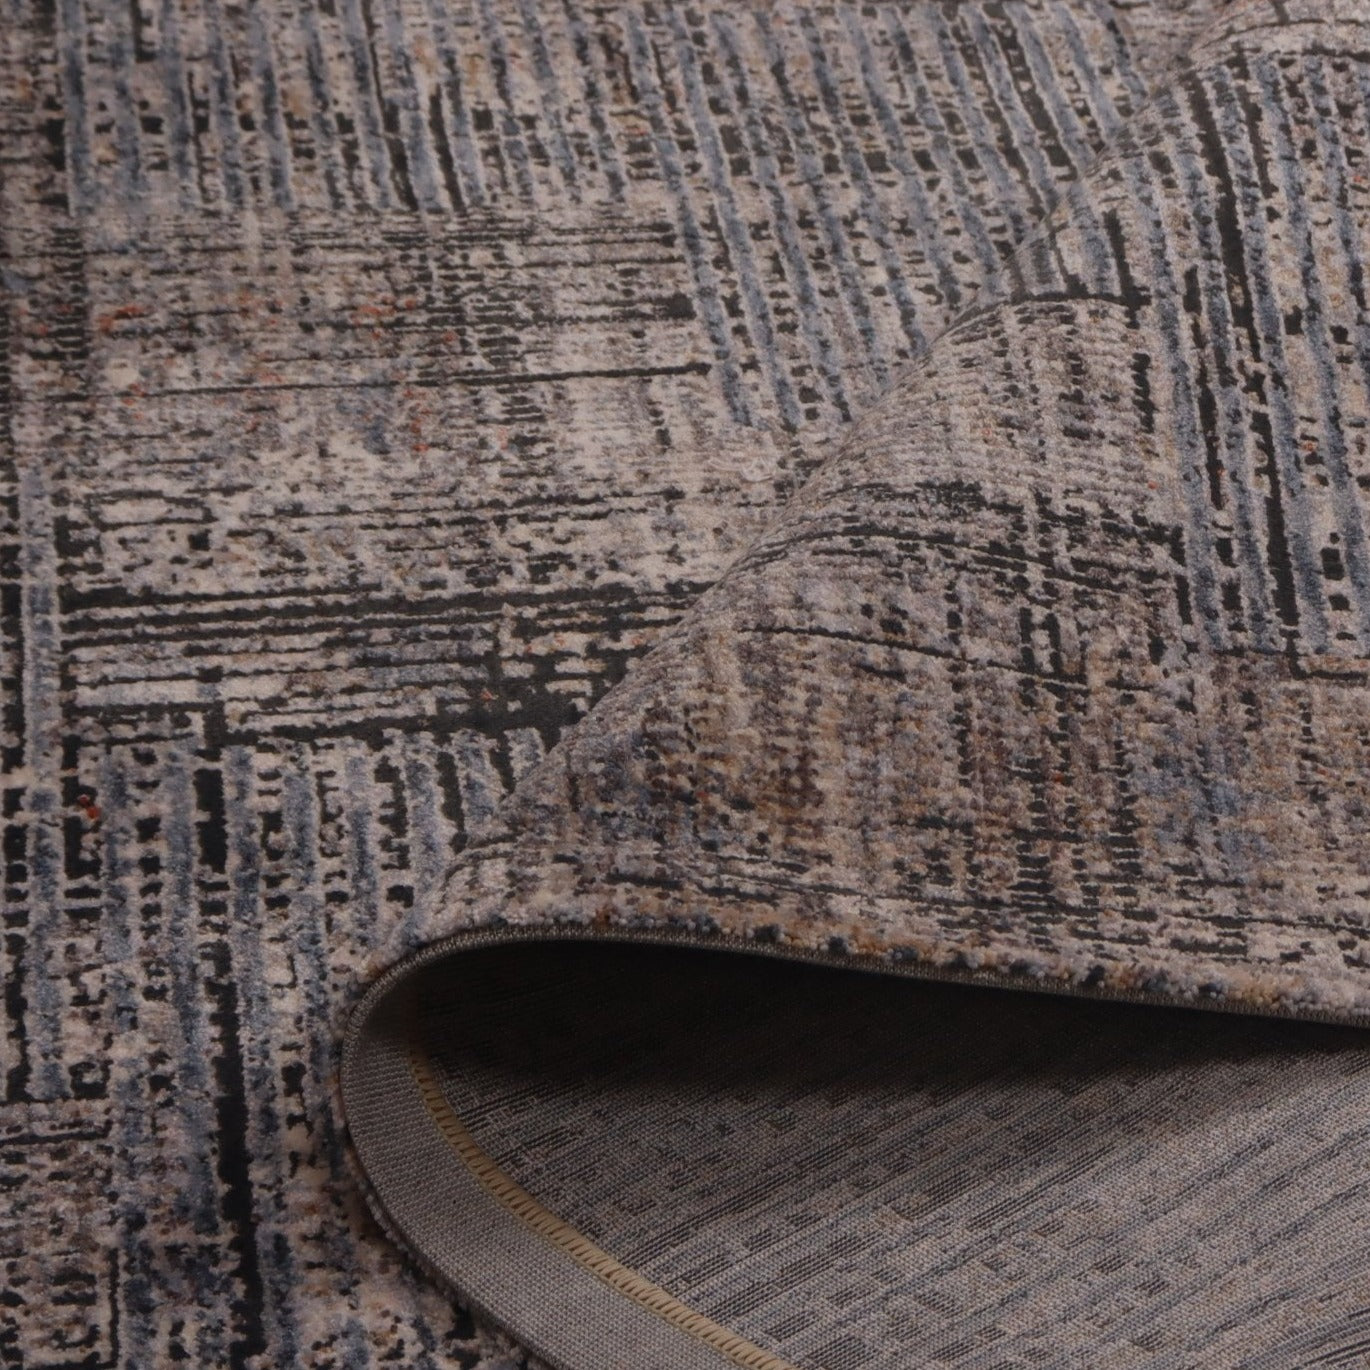 THERESA | שטיח מודרני עם טקסטורה בגווני כחול ואפור